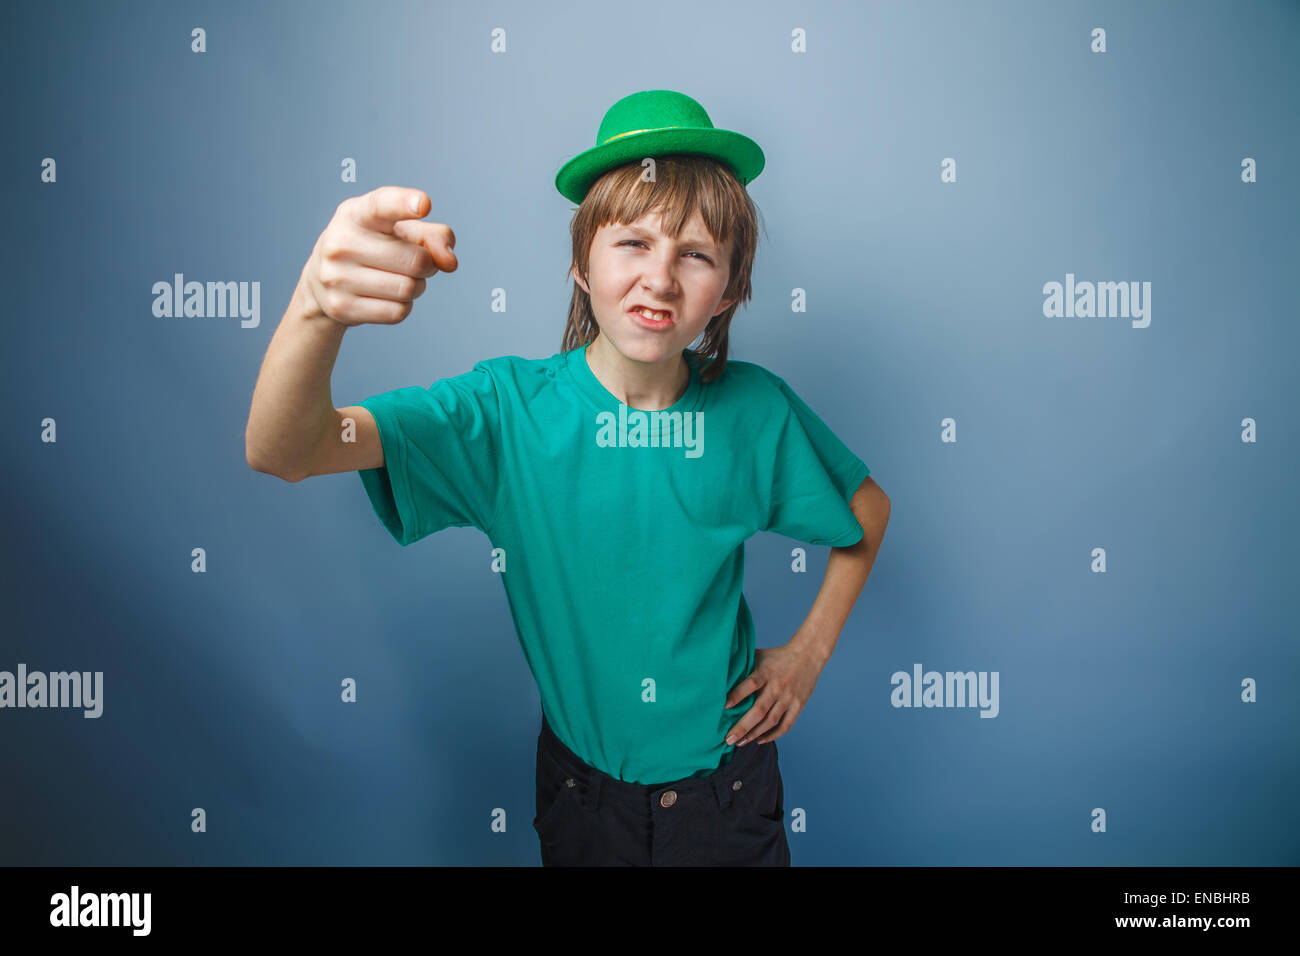 Spotten Sie junge Teenager europäischen Auftritt im grünen Hut zeigt seinen Finger nach vorne auf einem grauen Hintergrund, Stockfoto